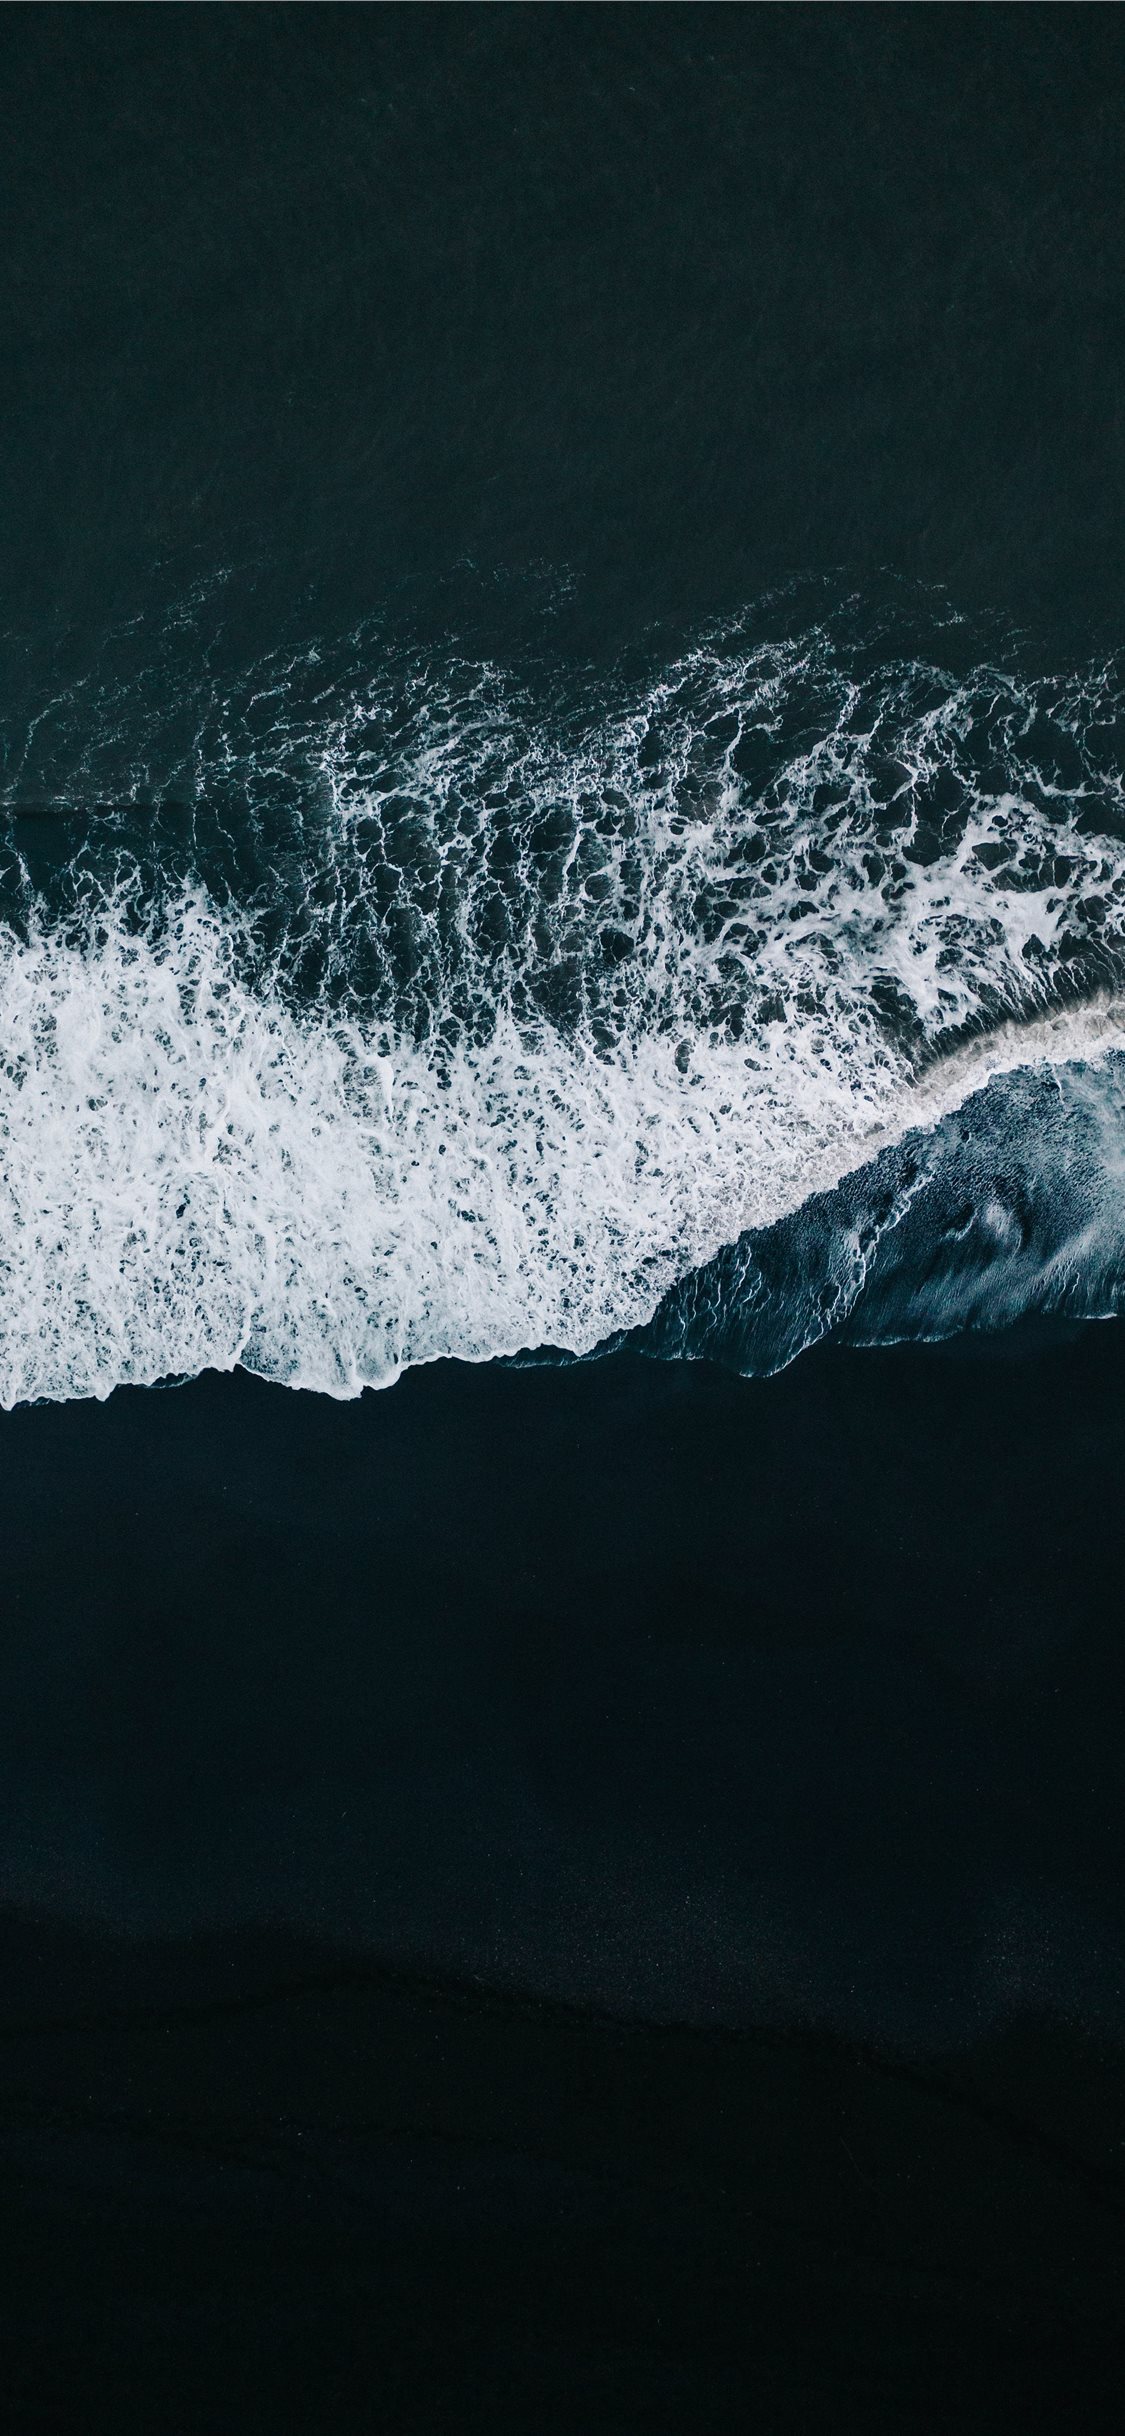 Tận hưởng khoảnh khắc thư giãn tuyệt vời cùng với hình nền iPhone X bãi biển. Cảm nhận sức mạnh của biển cả và giai điệu êm đềm của sóng vỗ, tạo ra một không gian đầy mê hoặc. Cùng tìm kiếm những hình nền đẹp nhất và thư giãn nhé!